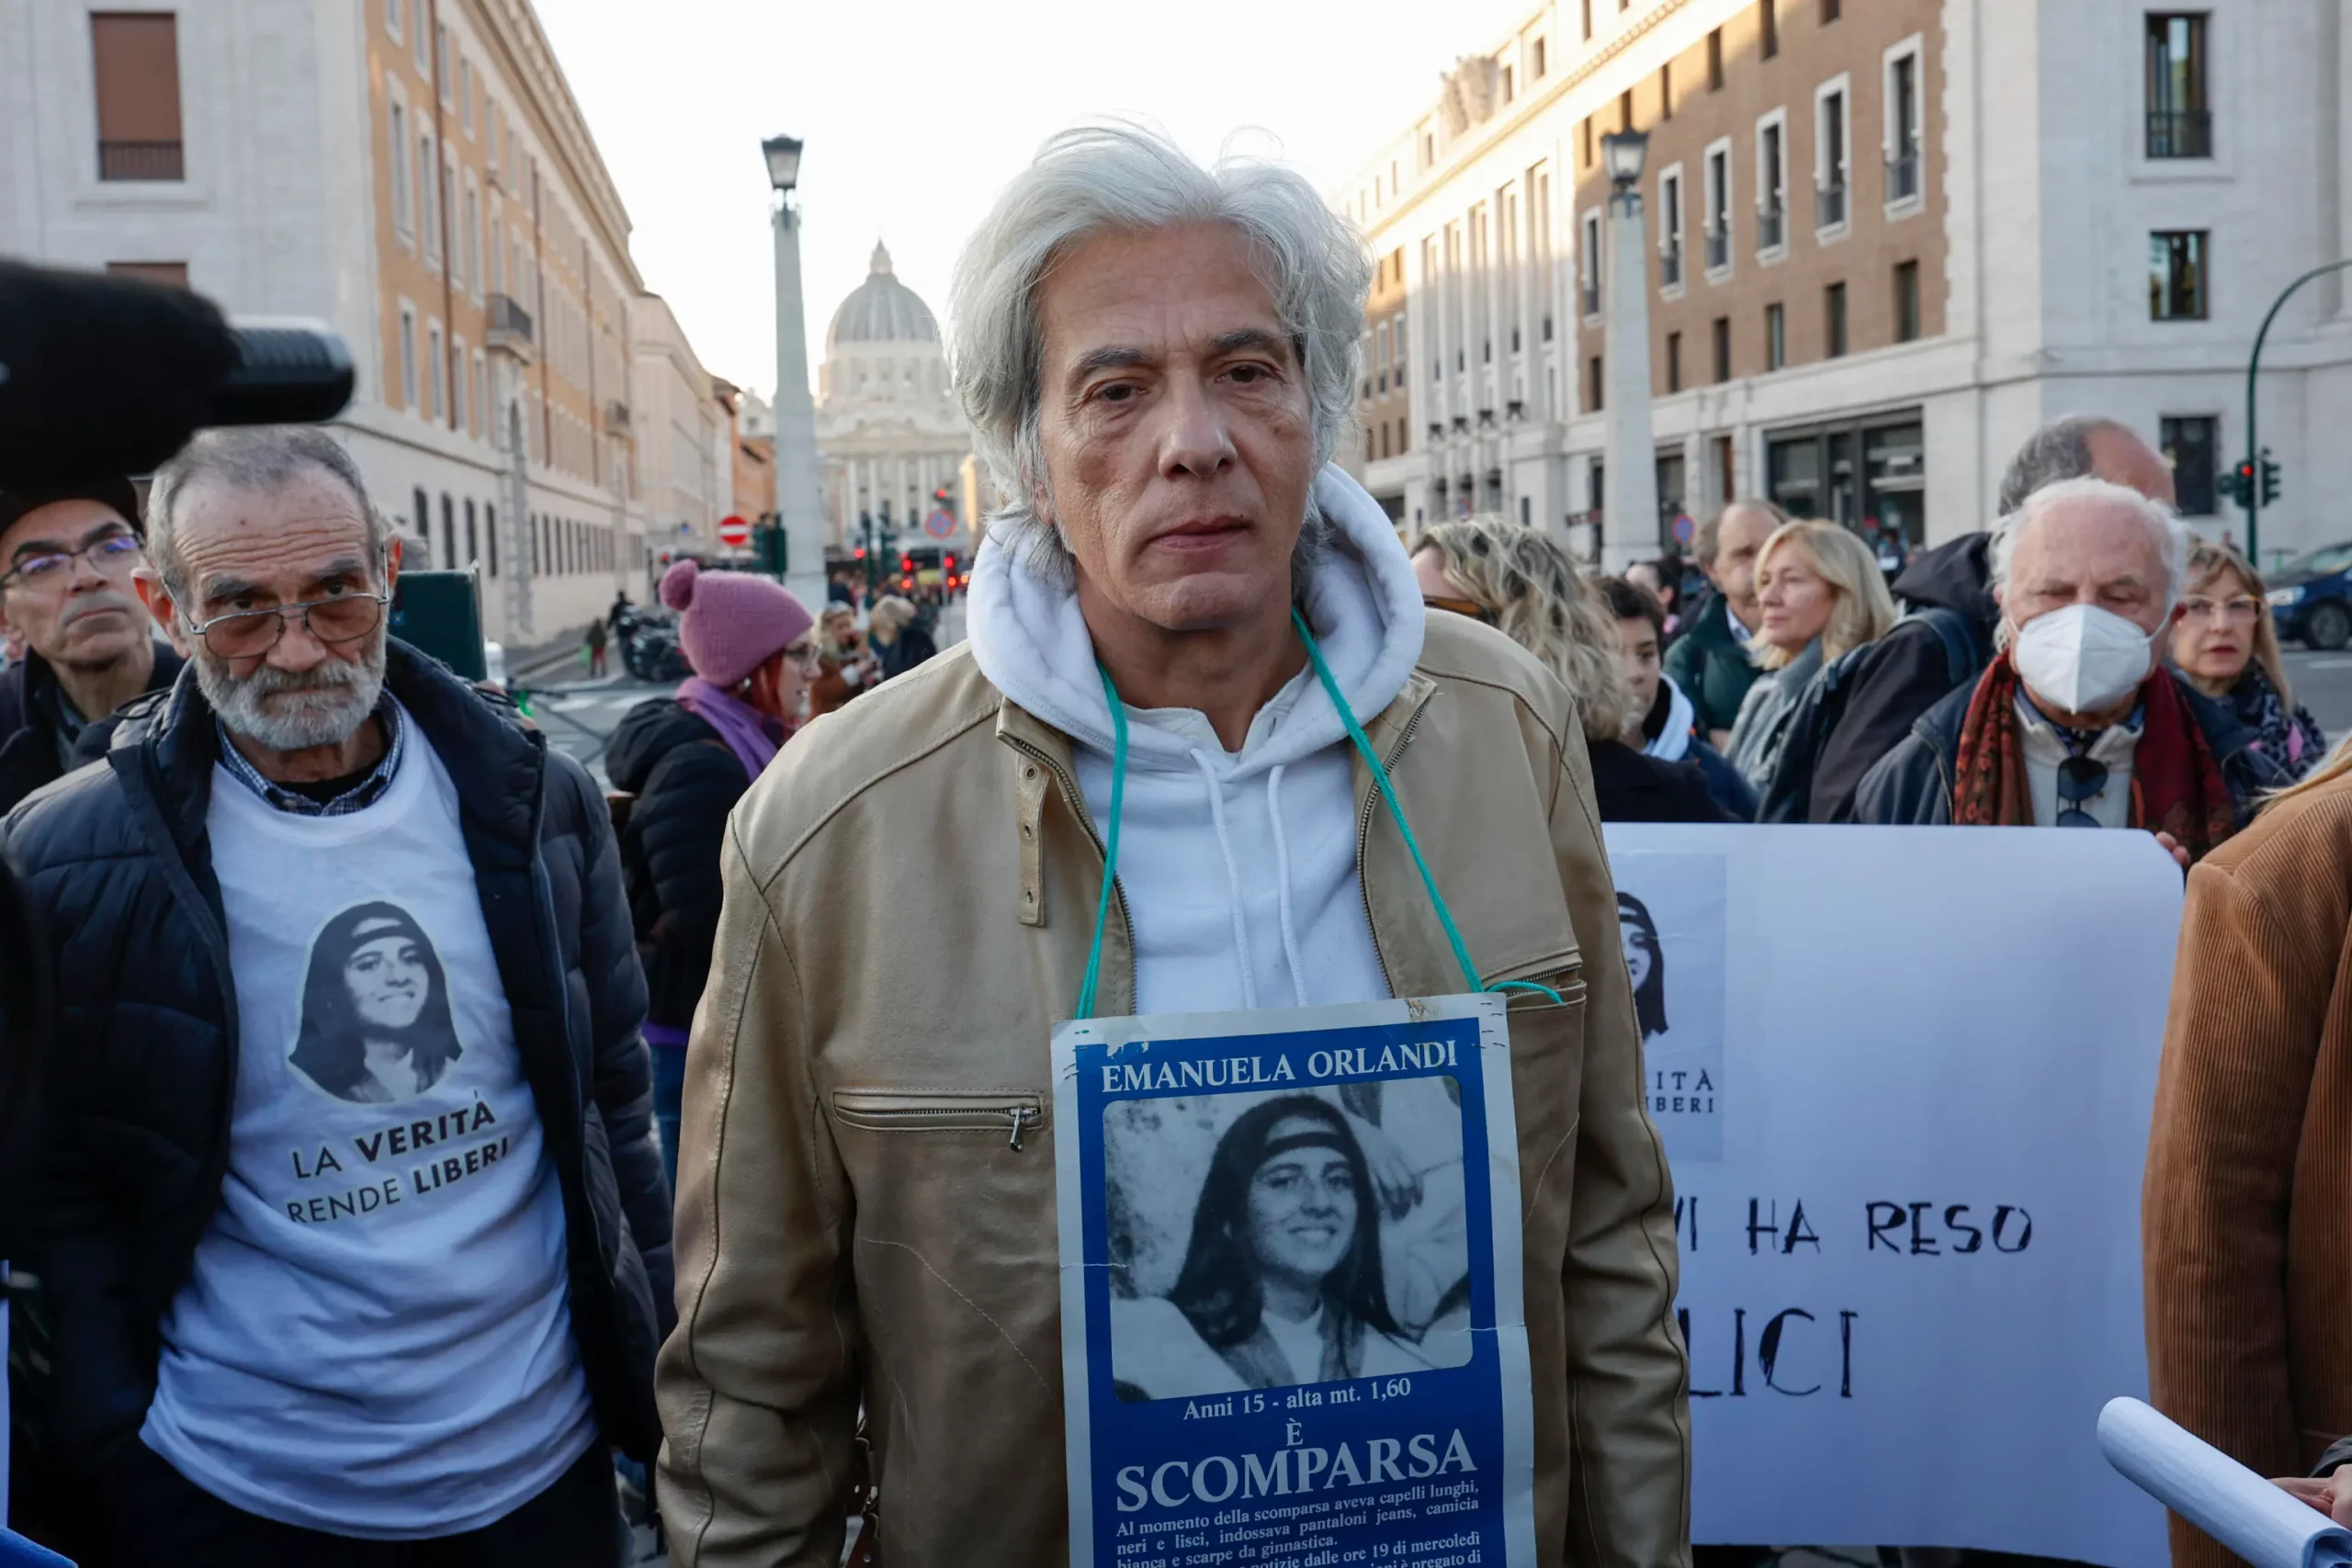 Lo zio Mario Meneguzzi dietro il rapimento di Emanuela Orlandi? Pietro: "Ora hanno passato il limite"